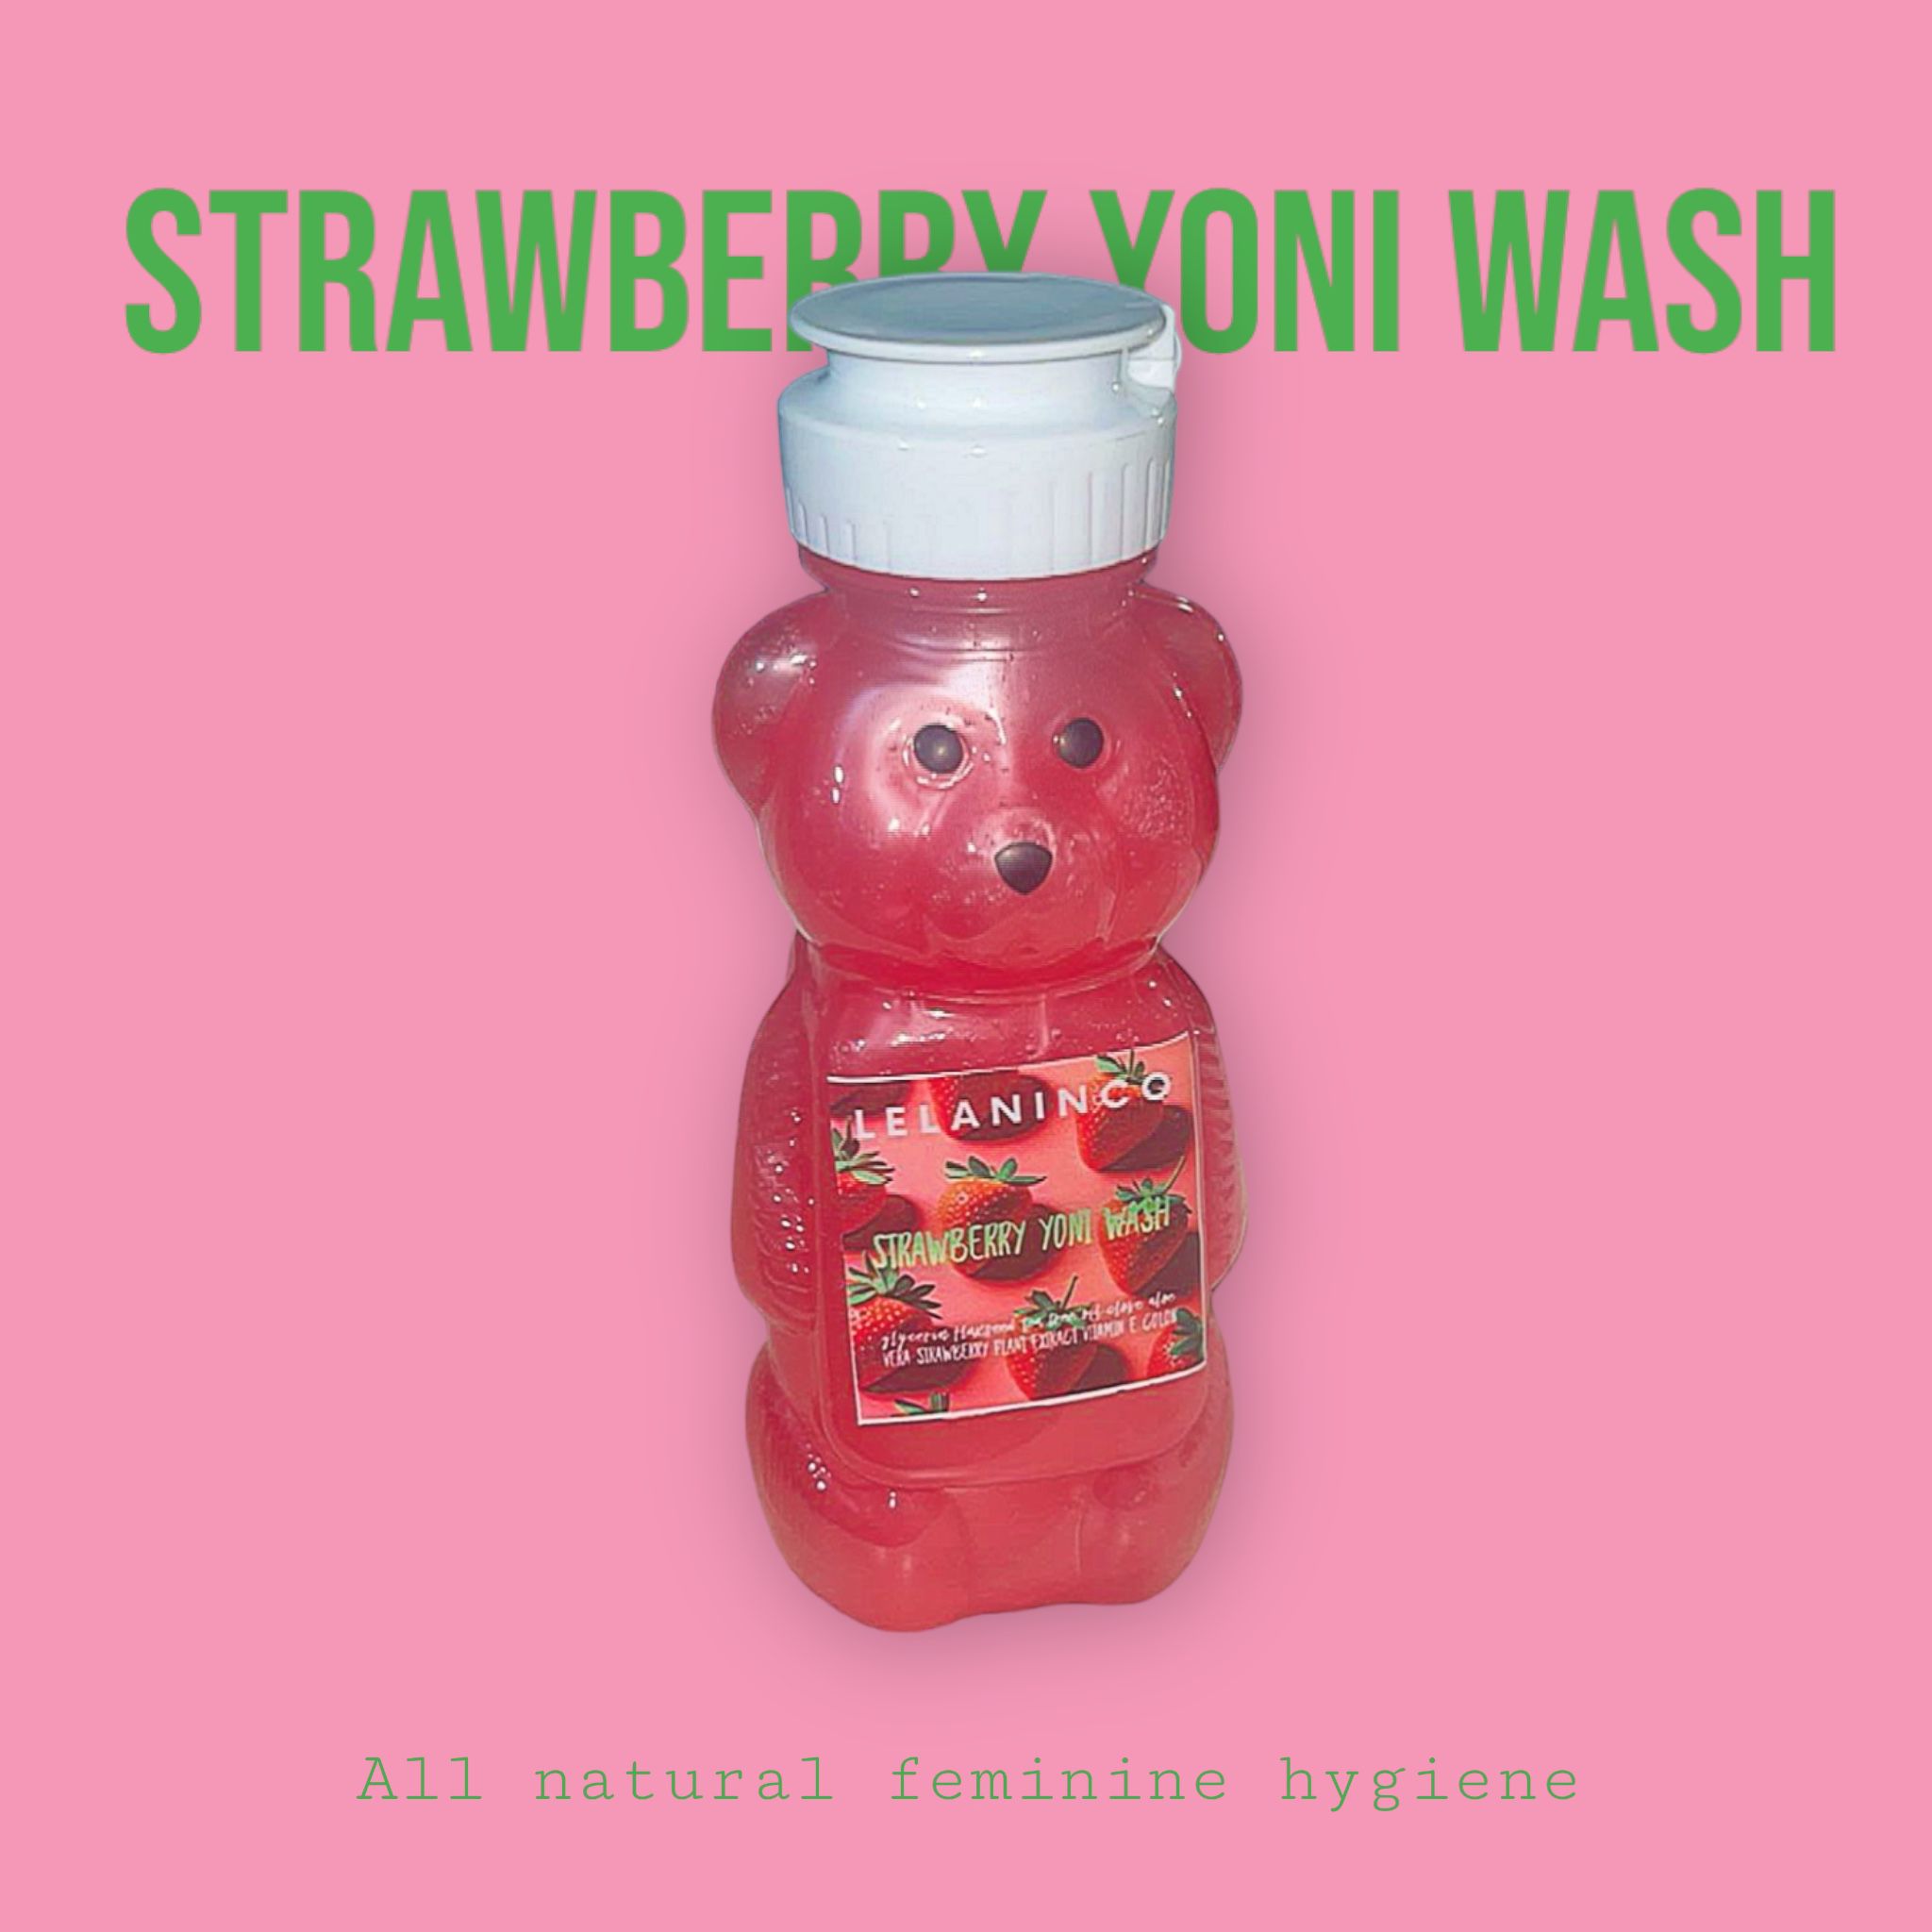 Strawberry Yoni wash 